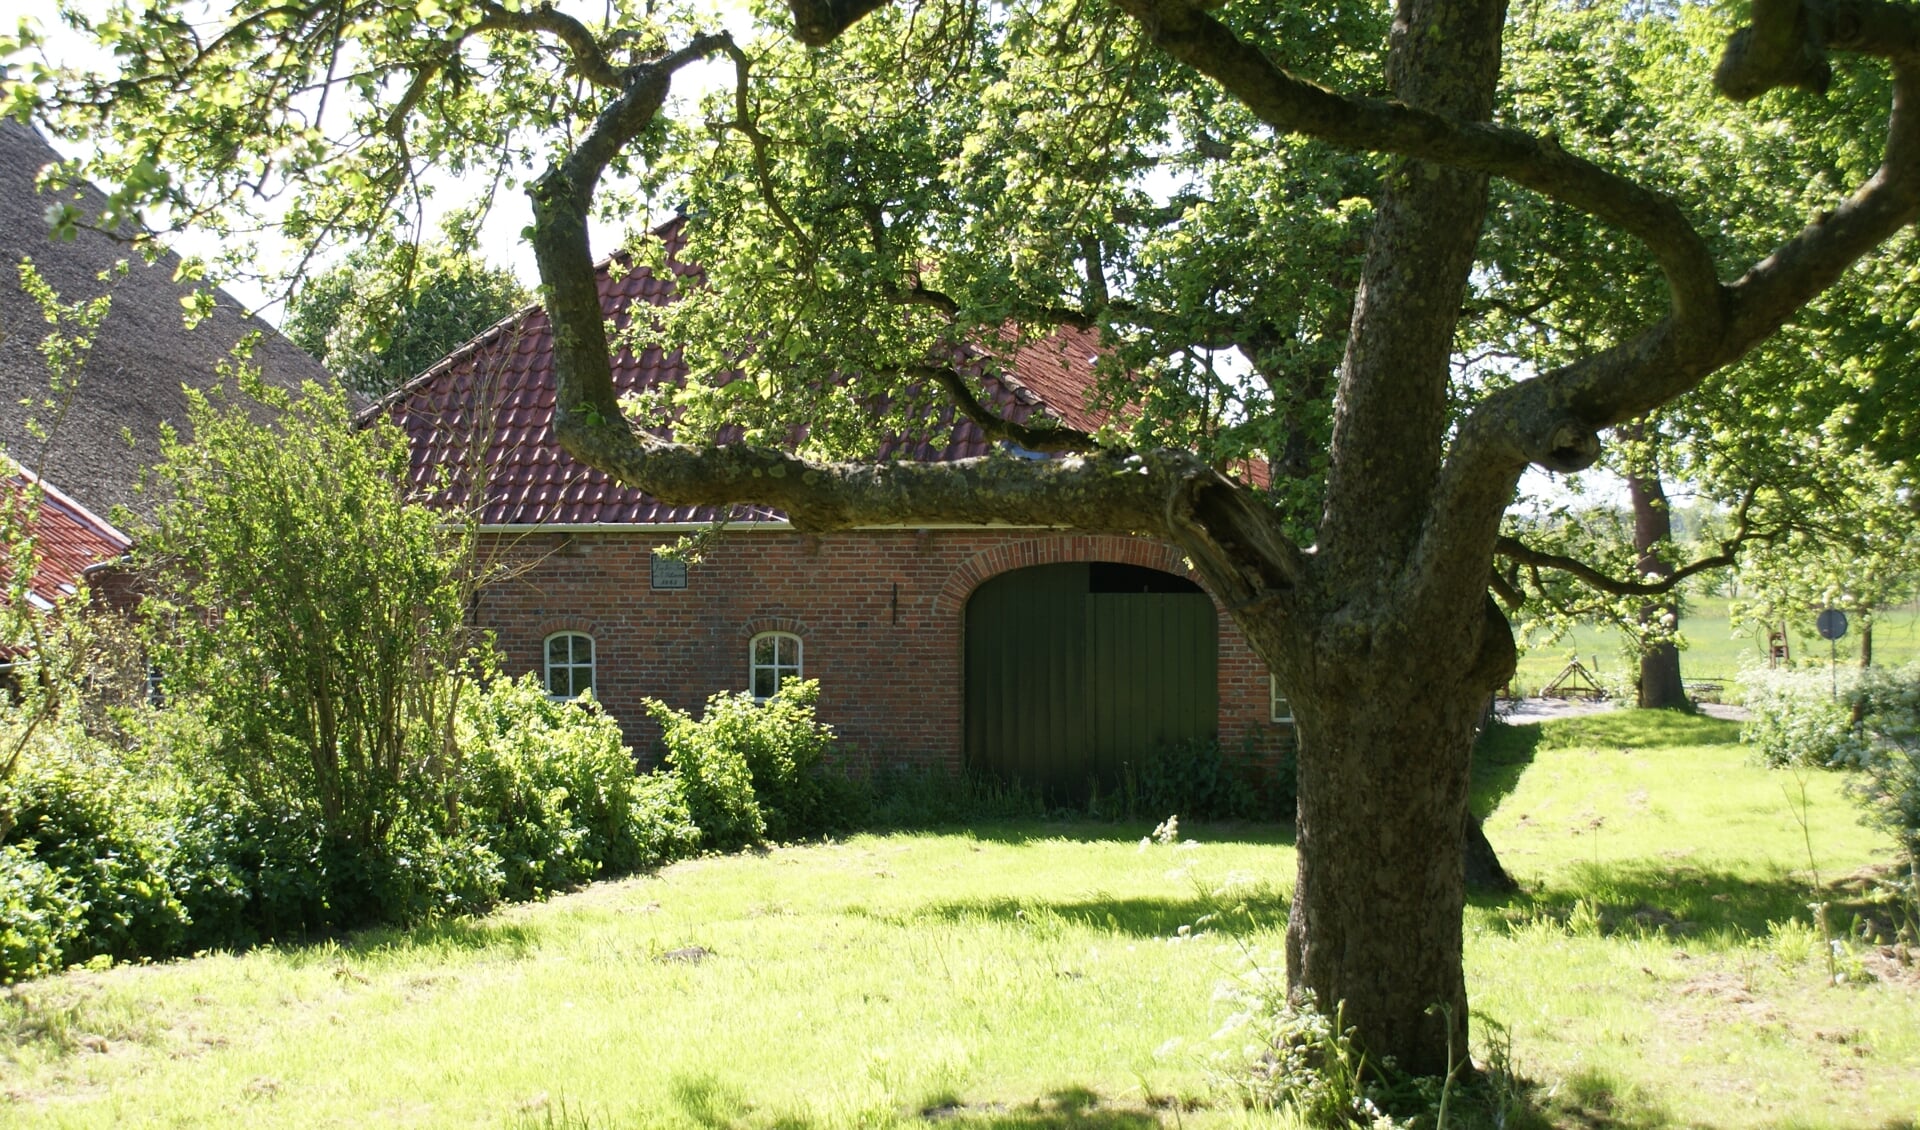 De Enne Jans Heerd in Maarhuizen is een voorbeeld van een groen boerenerf. Foto: Albert-Erik de Winter.